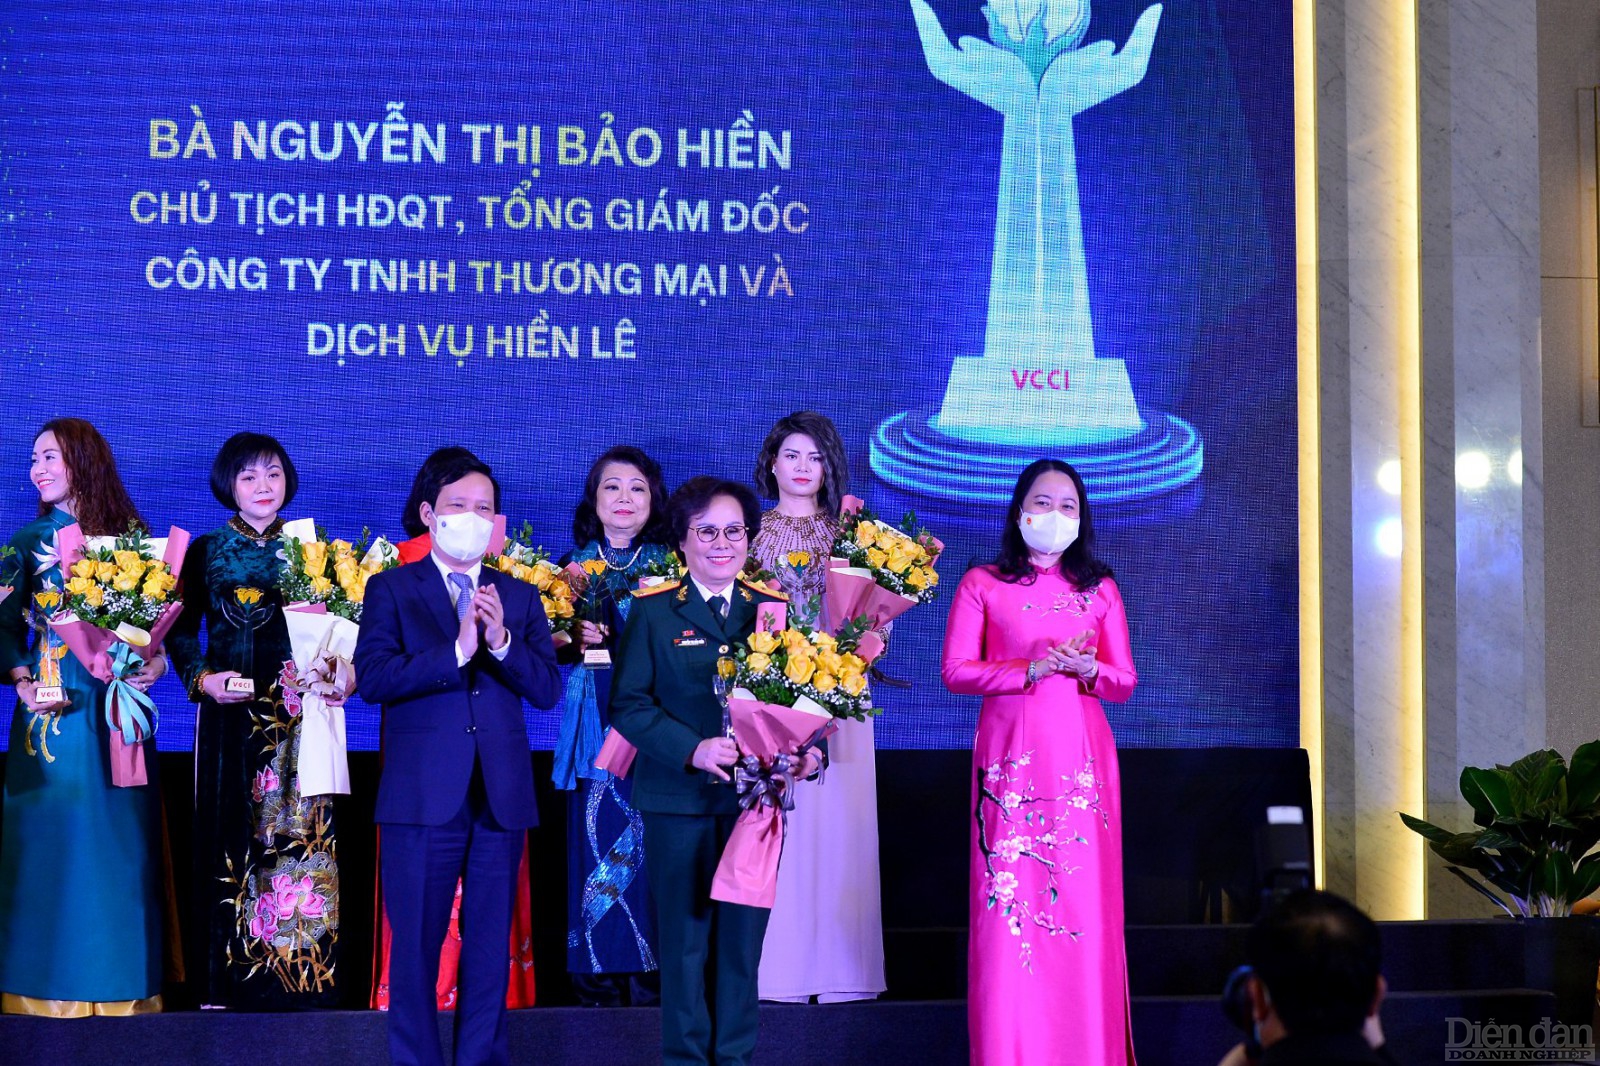 Bà Nguyễn Thị Bảo Hiền - Chủ tịch HĐQT, TGĐ Công ty TNHH Thương mại và Dịch vụ Hiền Lê là doanh nhân nữ của Hiệp hội Doanh nhân Cựu chiến binh được trao Cúp Bông hồng Vàng